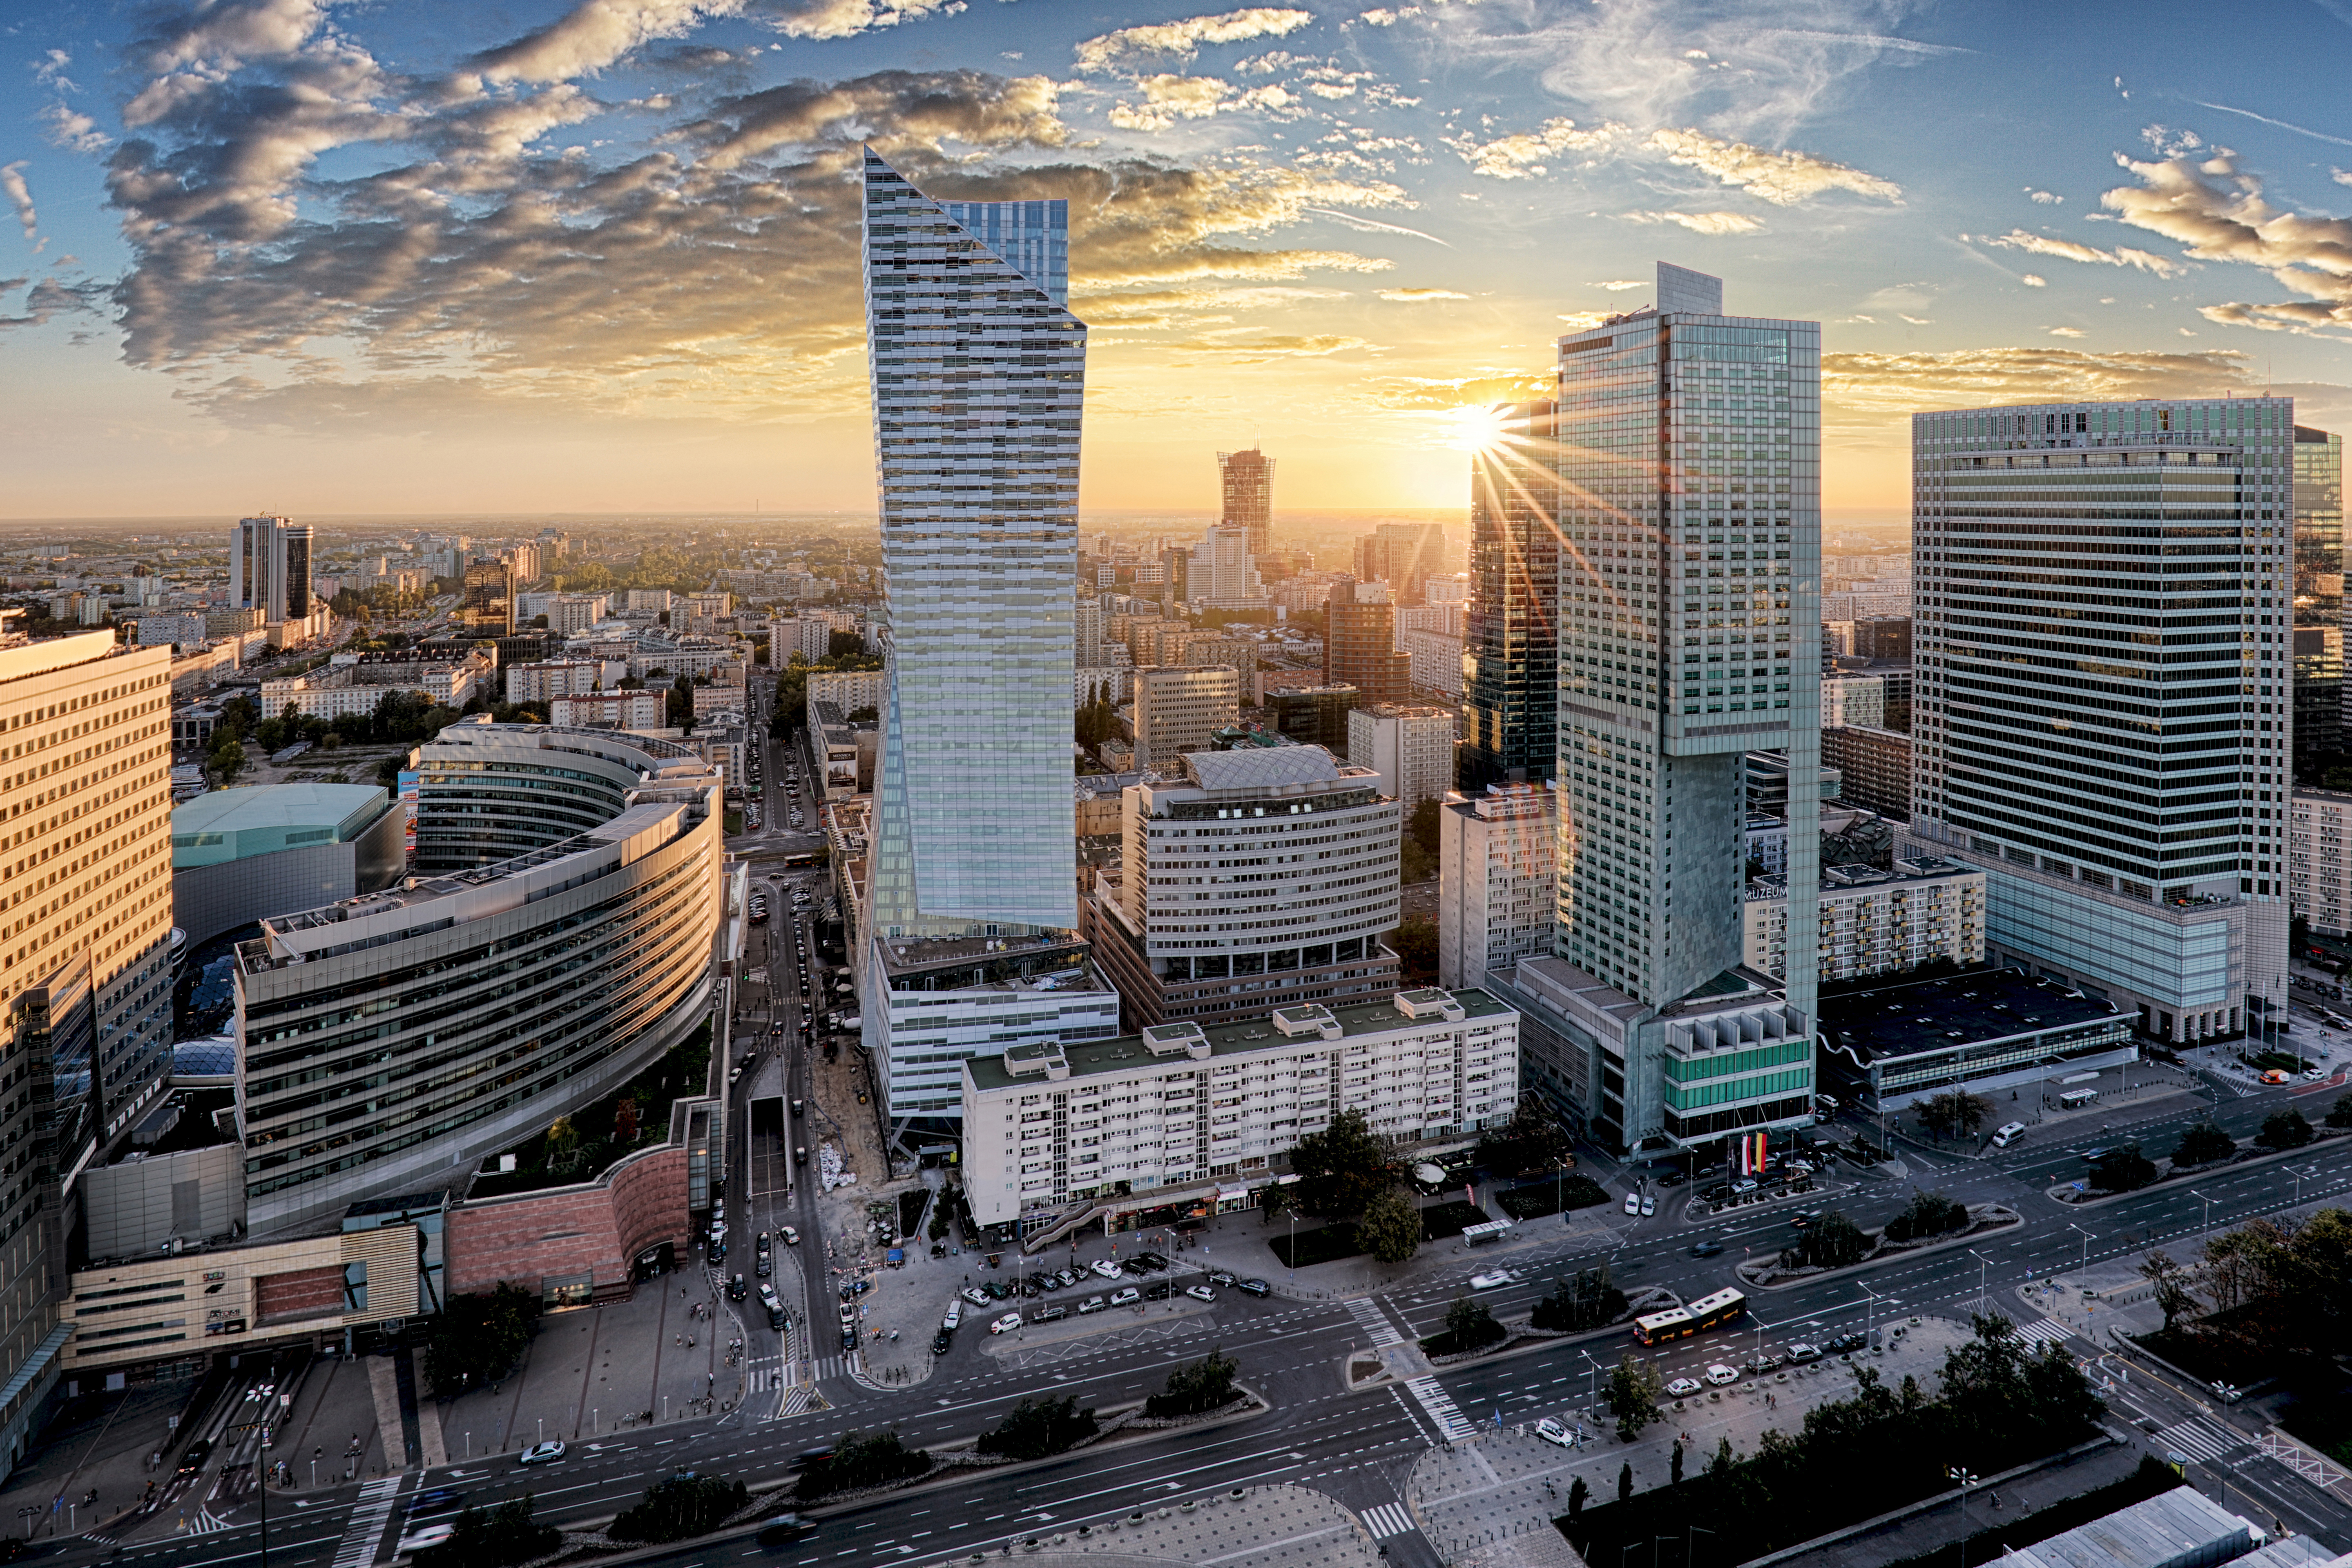 Панорама Варшавы как символ иммиграции в Польшу на ПМЖ